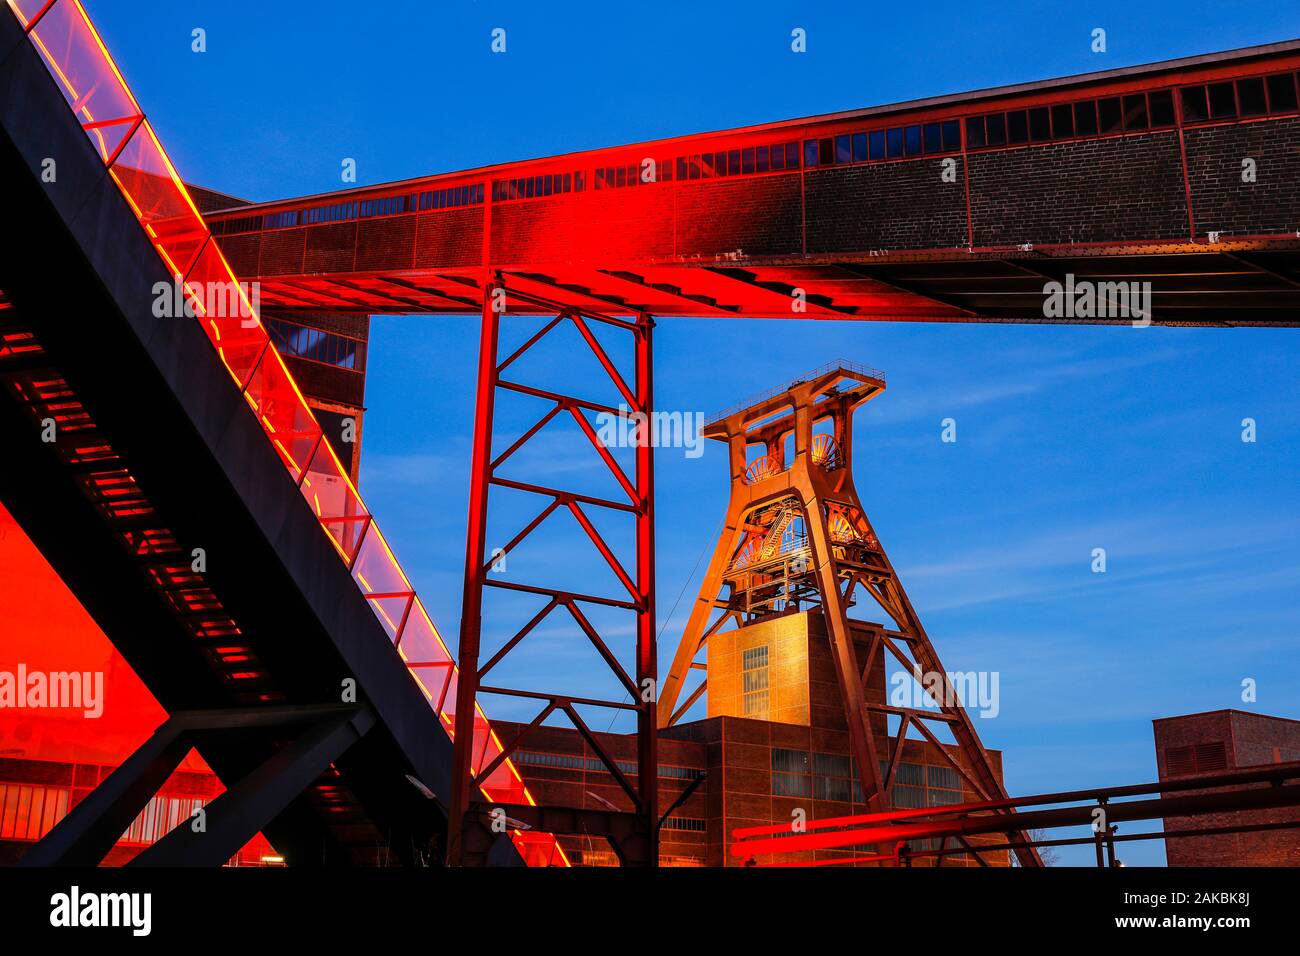 Essen, Ruhrgebiet, Nordrhein-Westfalen, Deutschland - Zeche Zollverein, die zum UNESCO-Weltkulturerbe Zollverein, beleuchtet in Rot in der Abenddämmerung. Es Stockfoto